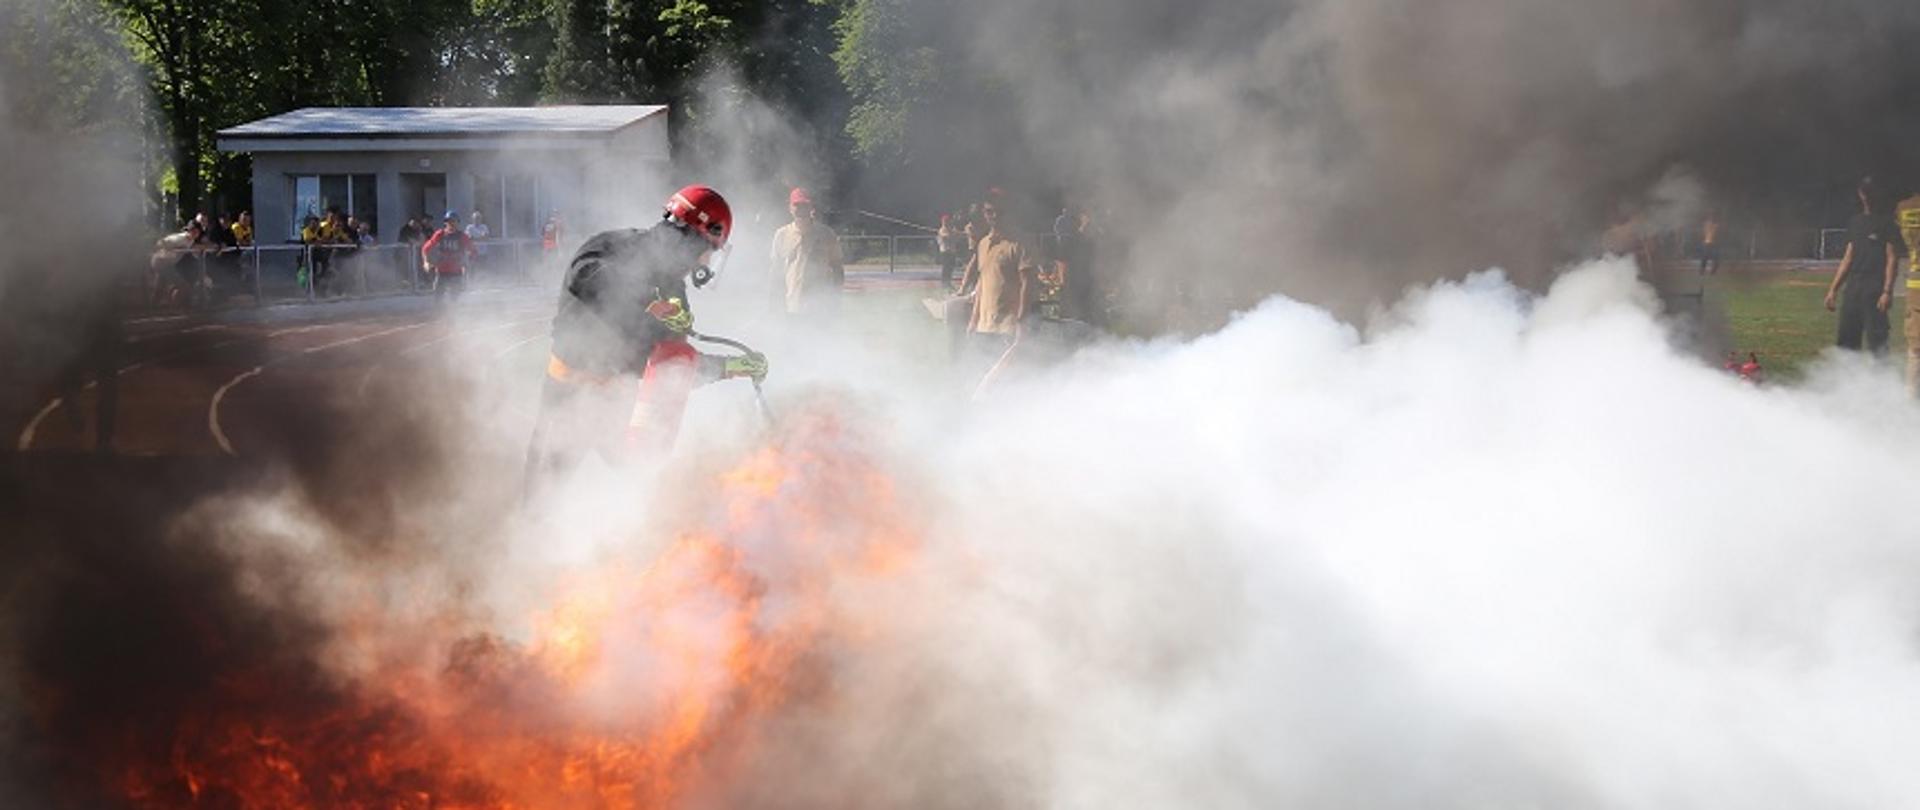 Zdjęcie obrazuje strażaka gaszącego pożar wanny, w której pali się łatwopalna ciecz. Jest to element rywalizacji strażaków podczas Mistrzostw Polski w Sporcie Pożarniczym.